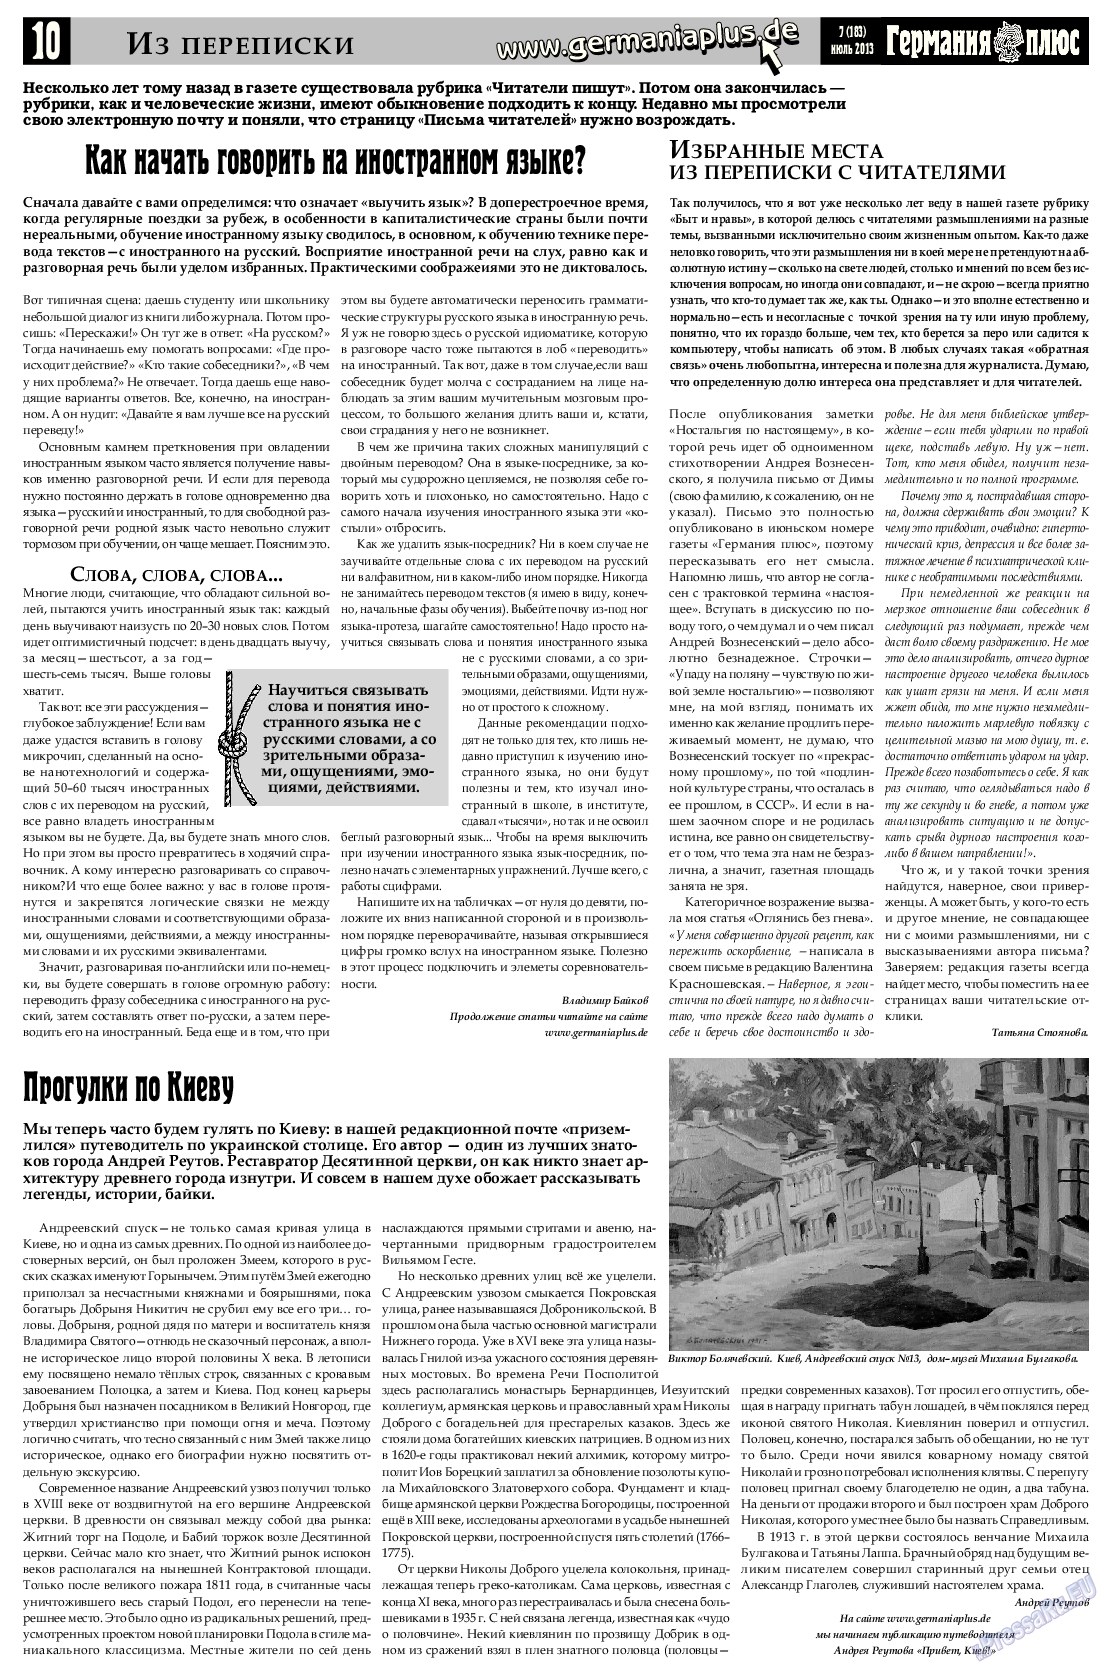 Германия плюс (газета). 2013 год, номер 7, стр. 10